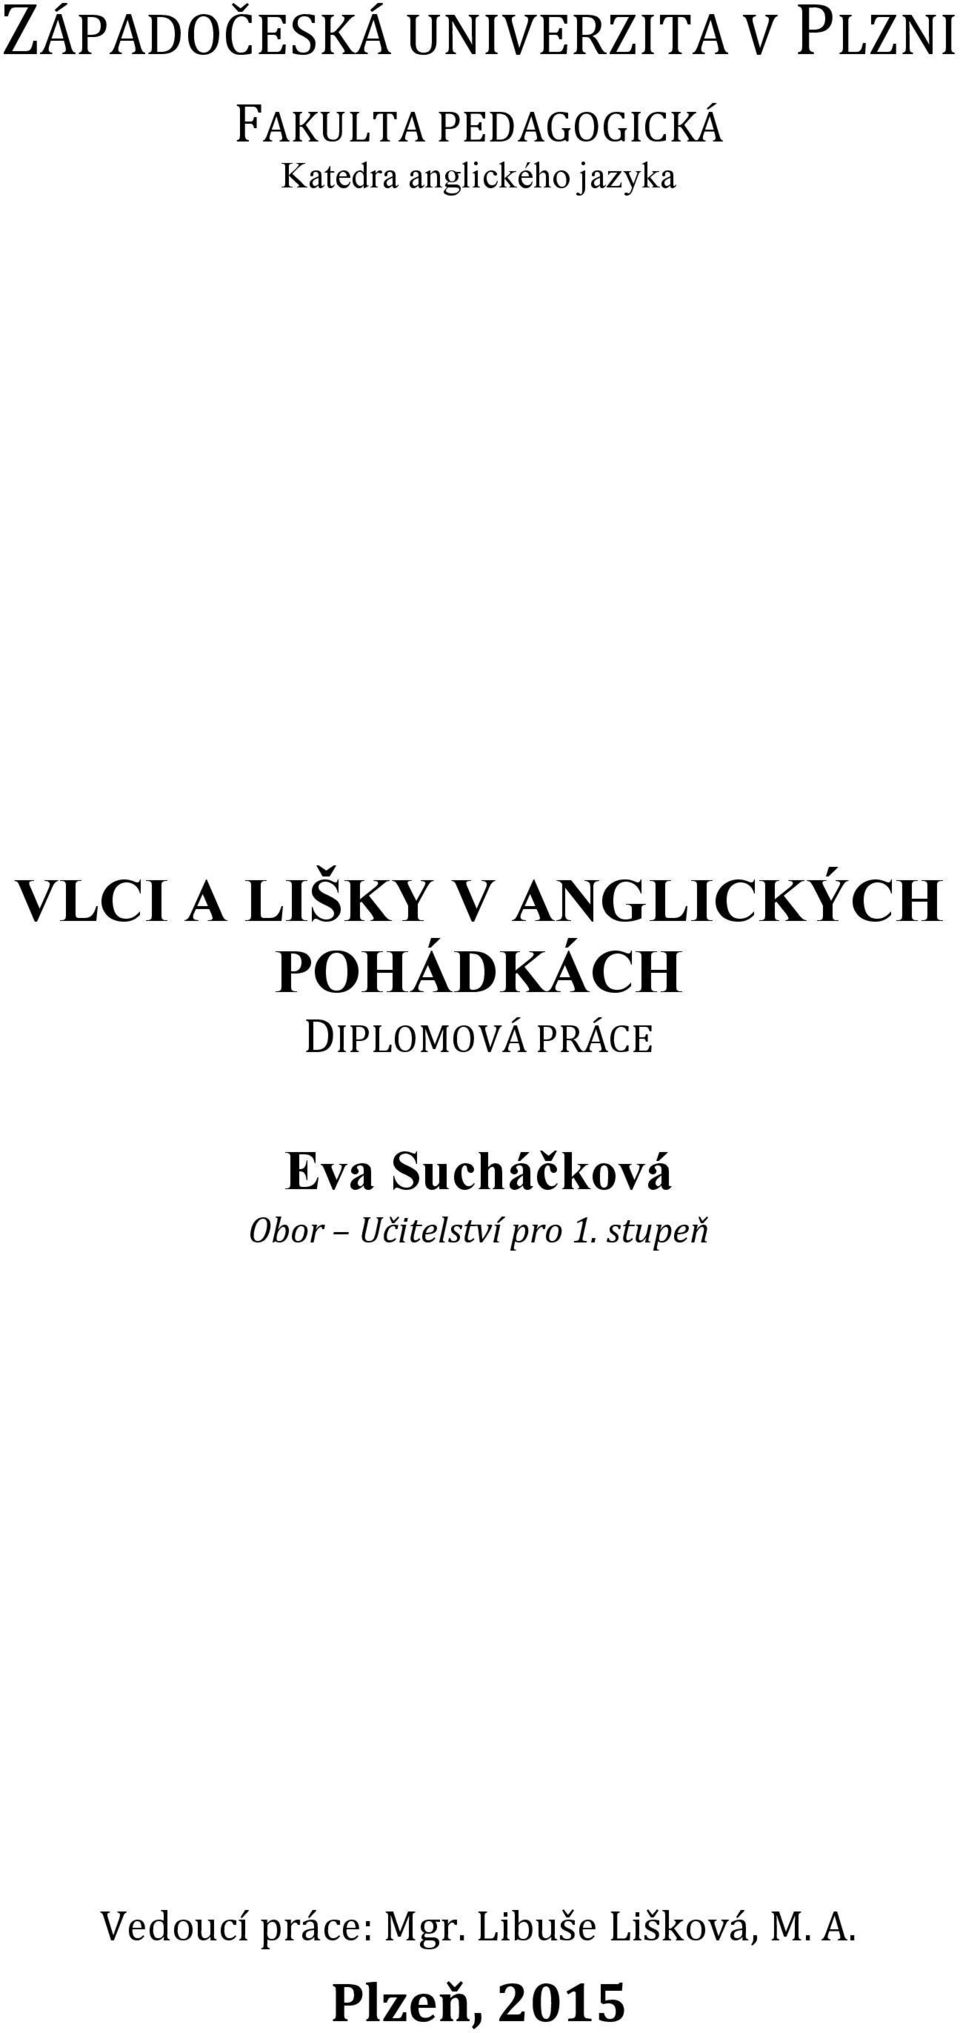 POHÁDKÁCH DIPLOMOVÁ PRÁCE Eva Sucháčková Obor Učitelství